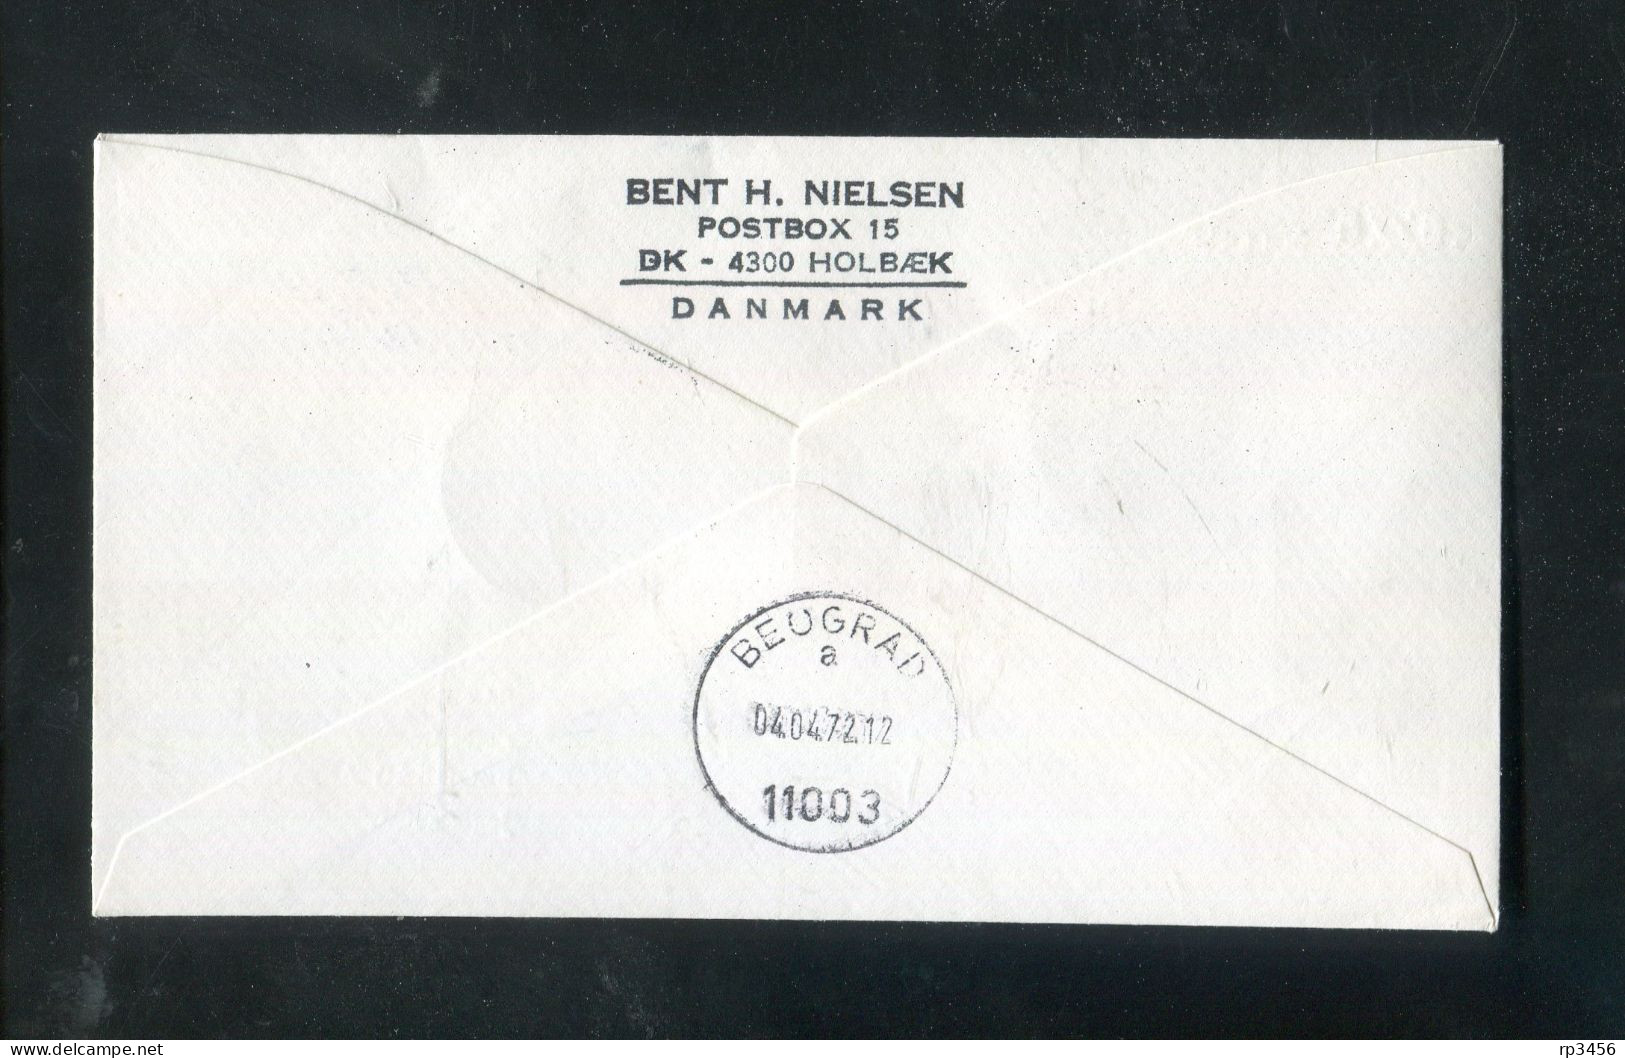 "NORWEGEN" 1972, SAS-Erstflugbrief "Oslo-Beograd" (80021) - Lettres & Documents